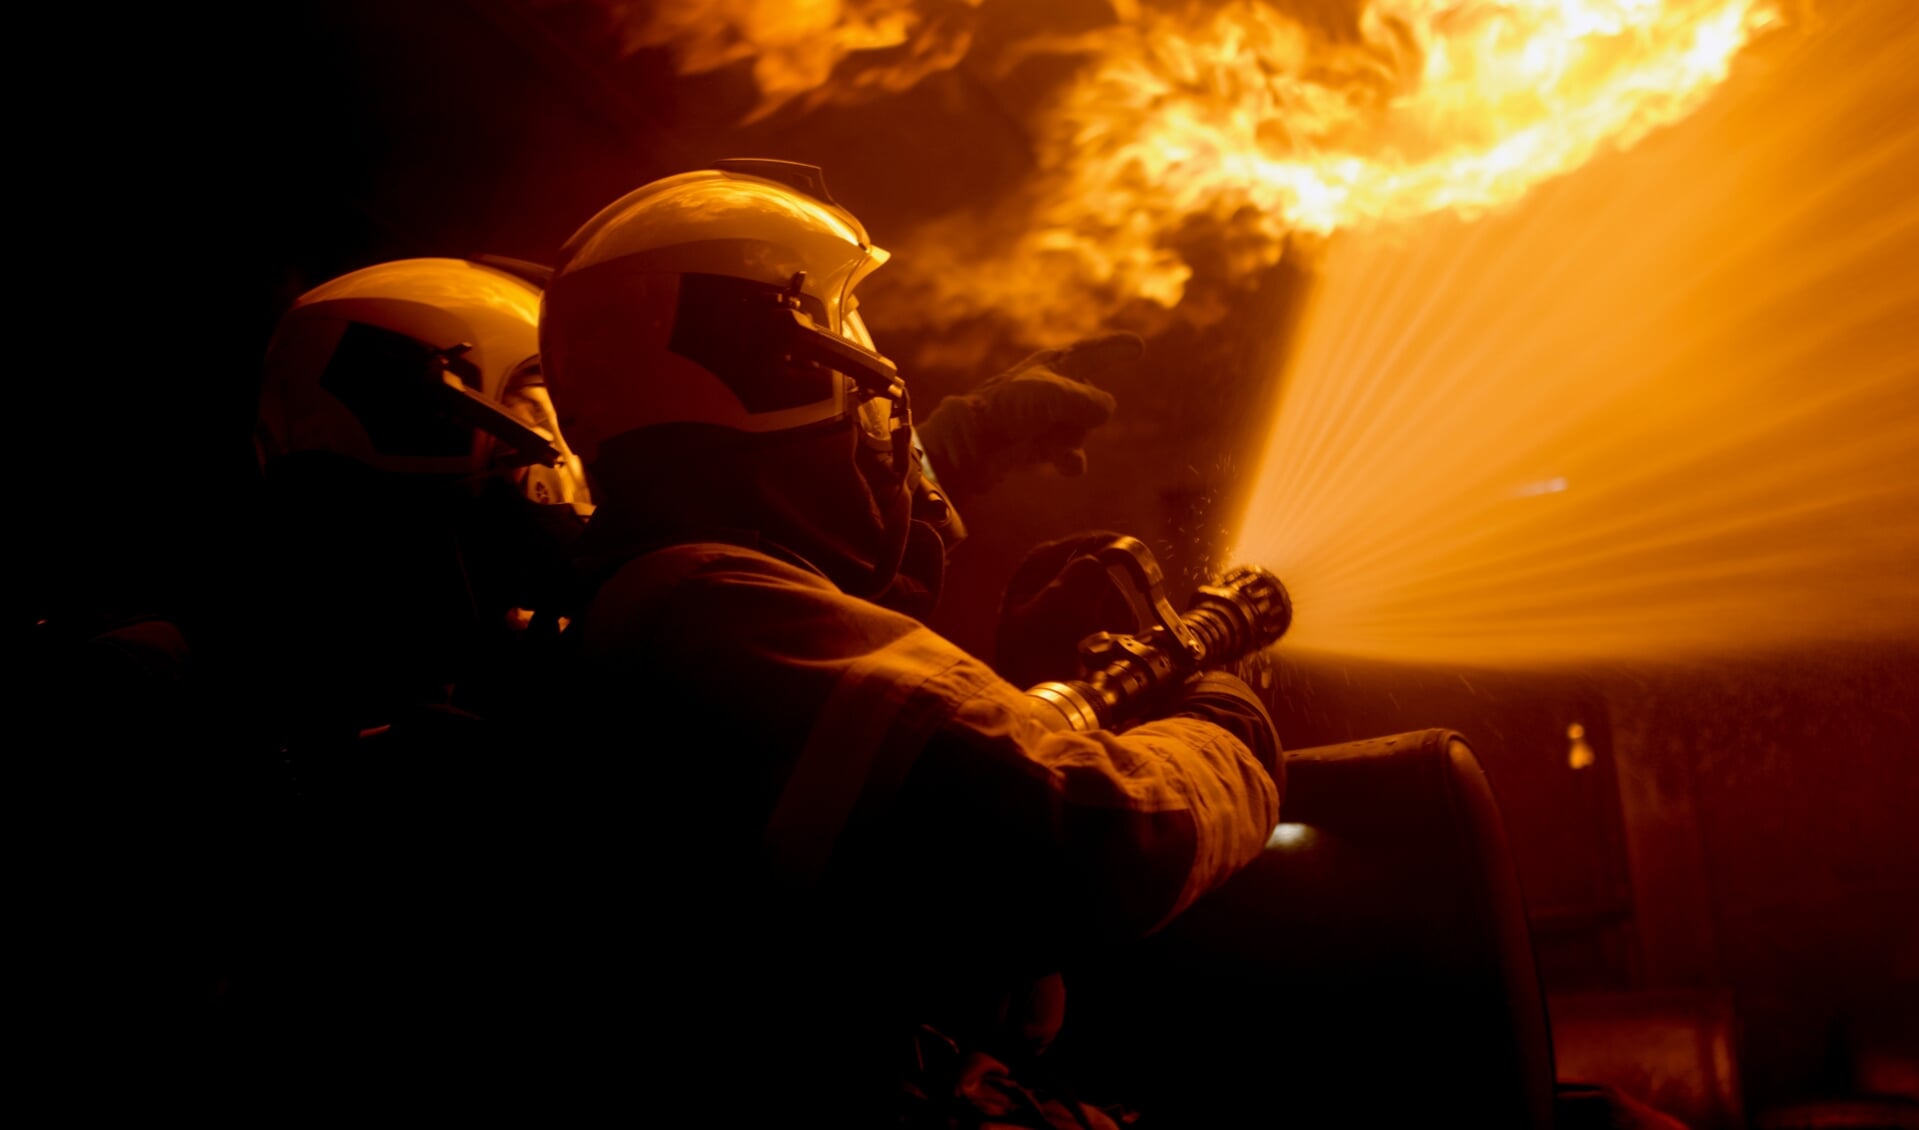 Een brand kan binnen drie minuten tot levensgevaarlijke situaties leiden.